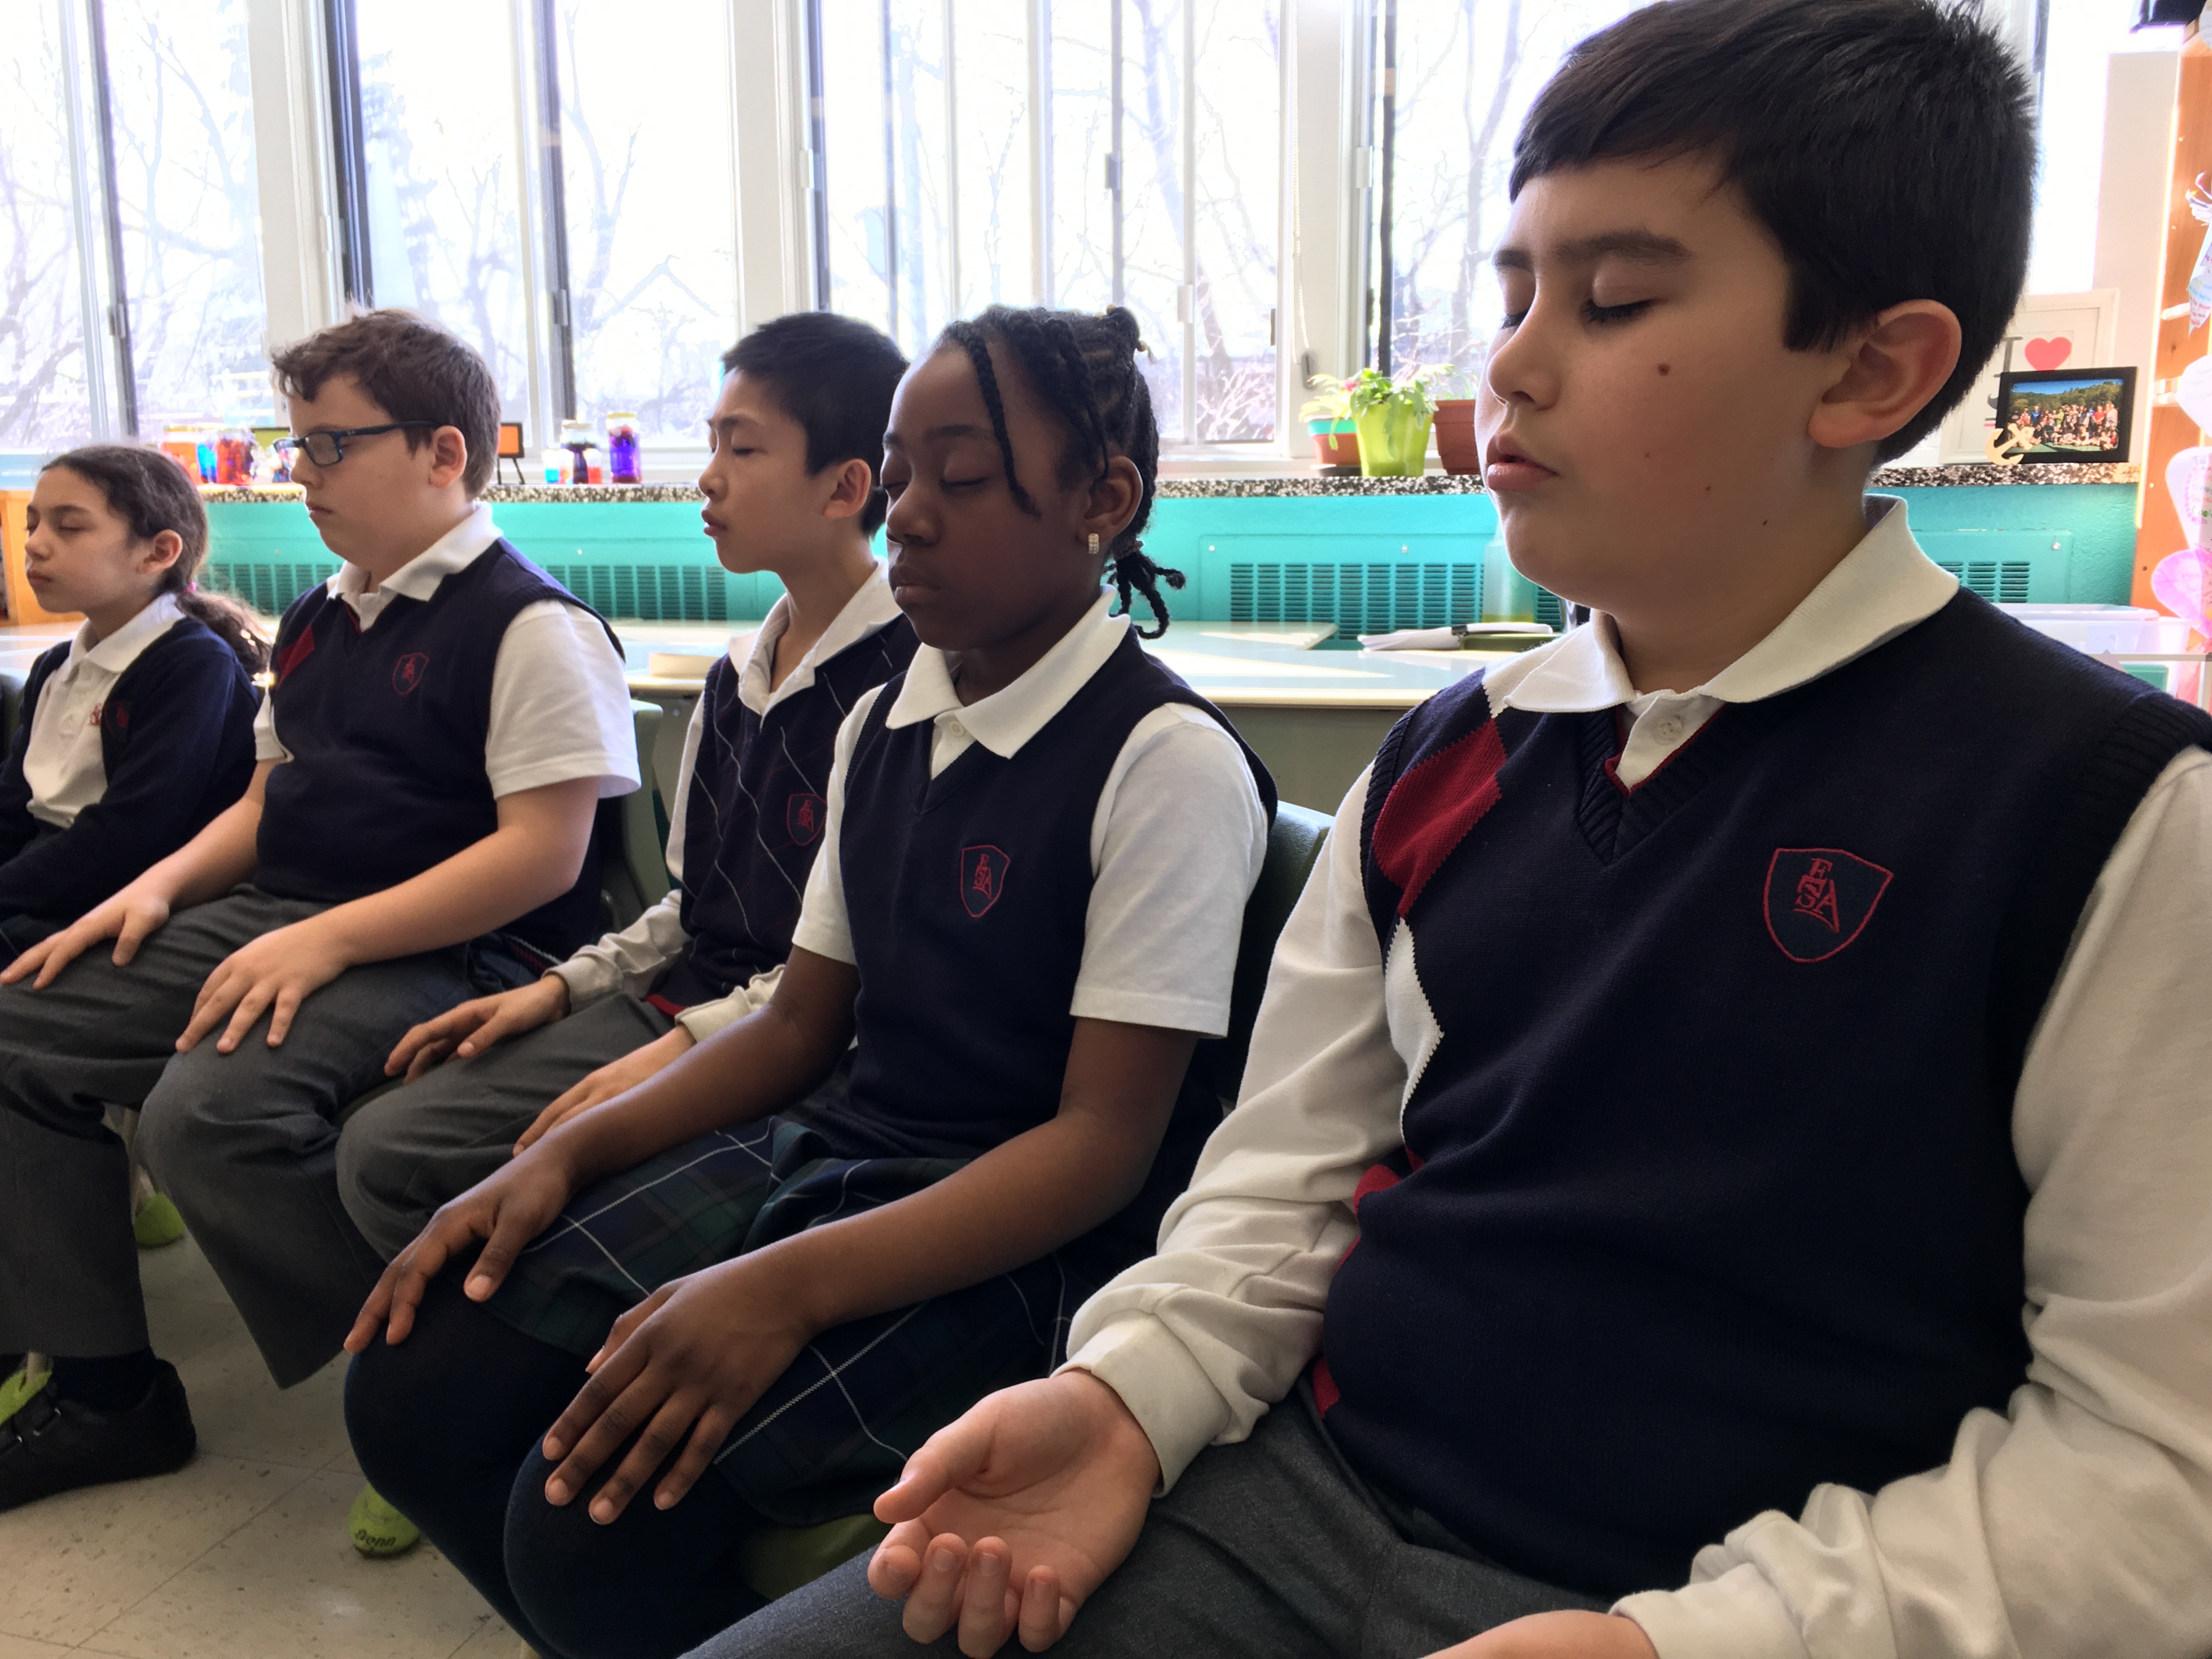 Des jeunes en train de méditer en classe.